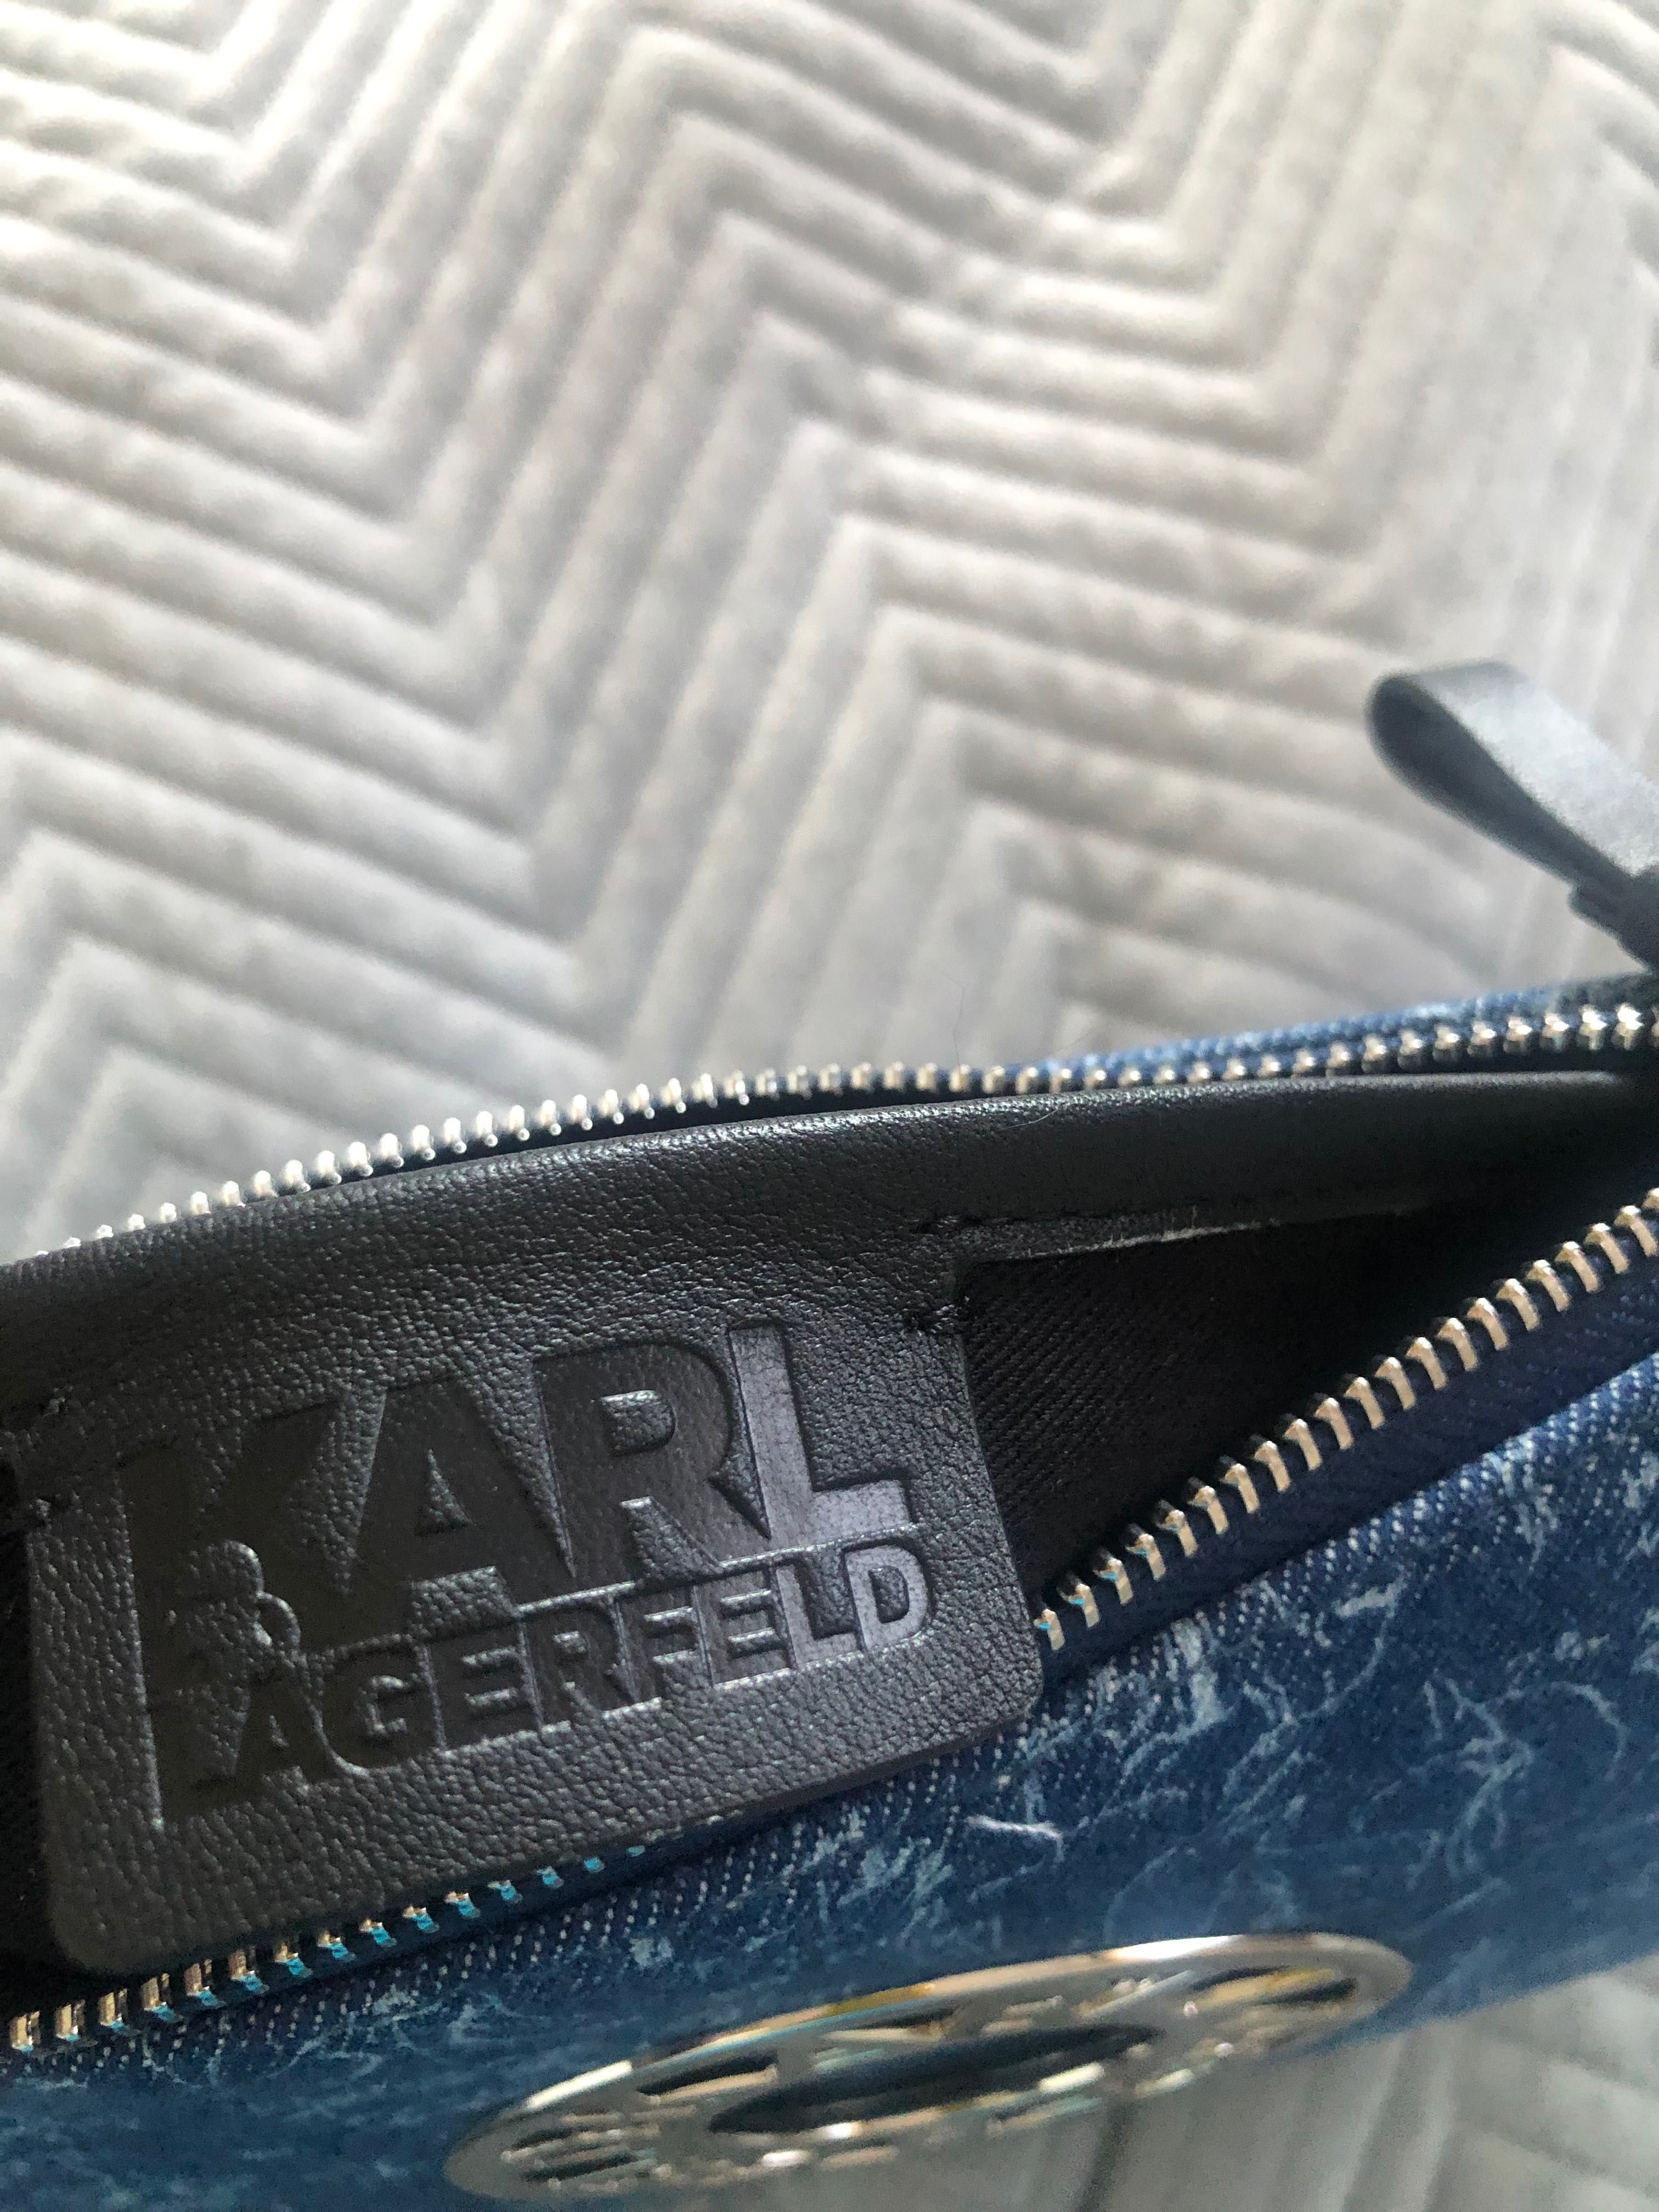 Oryginalna torebka Karl Lagerfeld